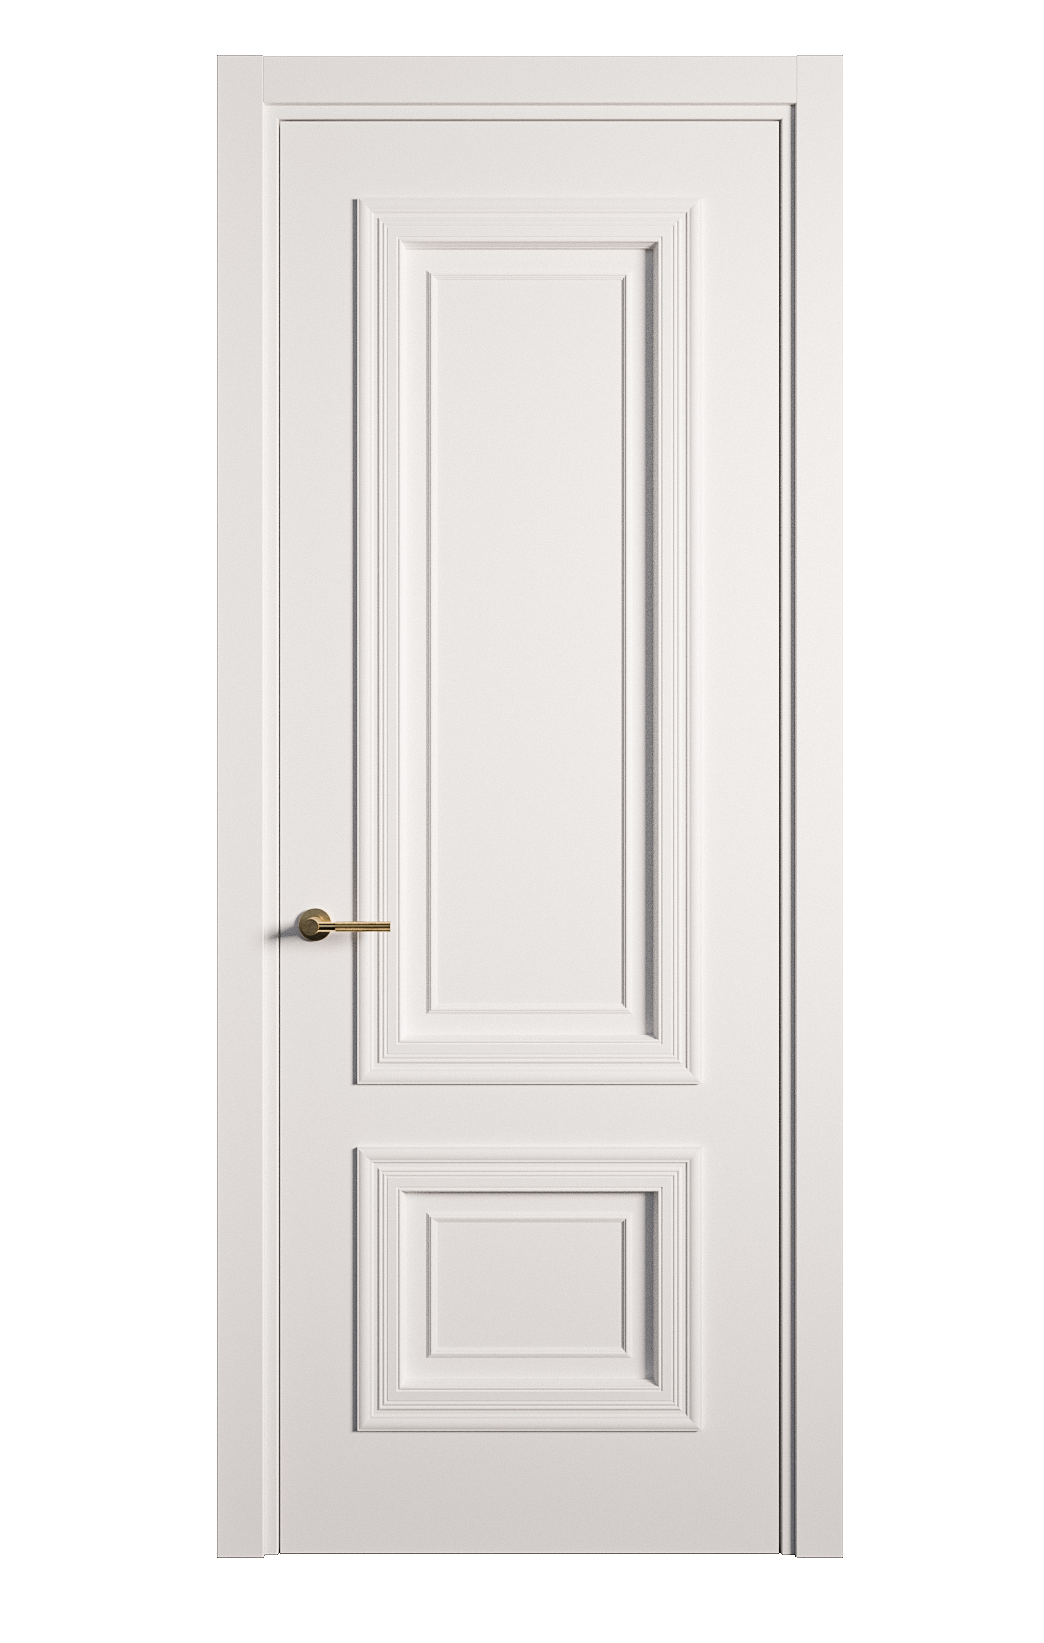 Межкомнатная дверь Мальта-1 глухая эмаль ral 9003 26961